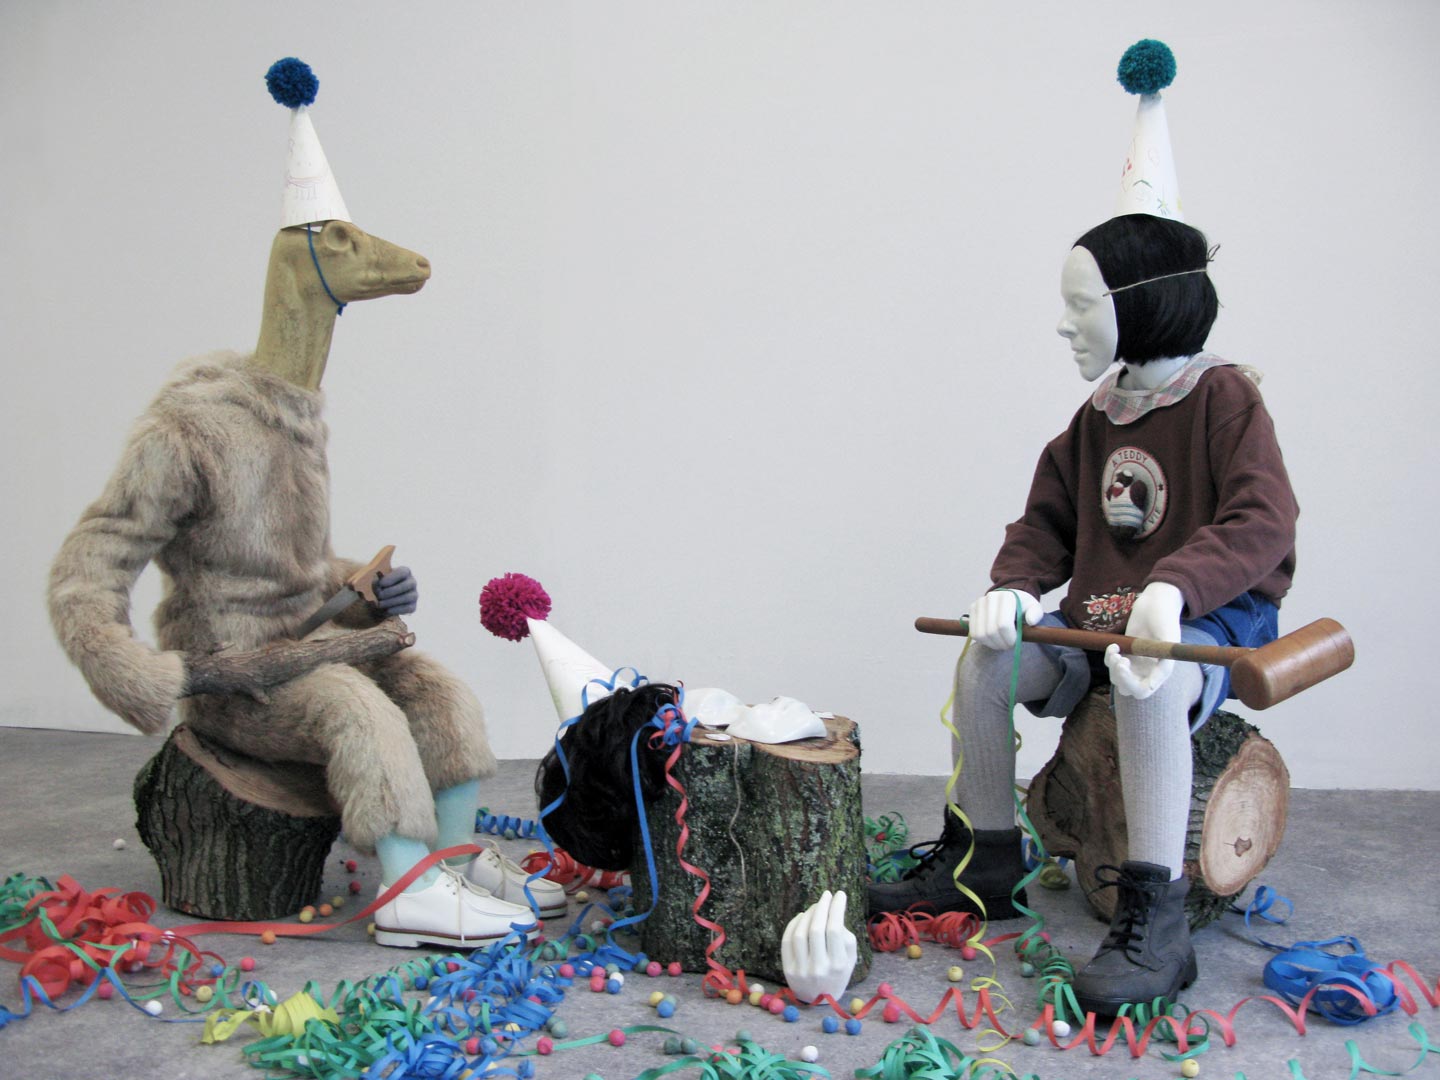 Vues de l'installation intitulée "Joyeuses Pétoches". L'installation présente des figures enfantines, hybrides ou costumées dans les vestiges d’une célébration.